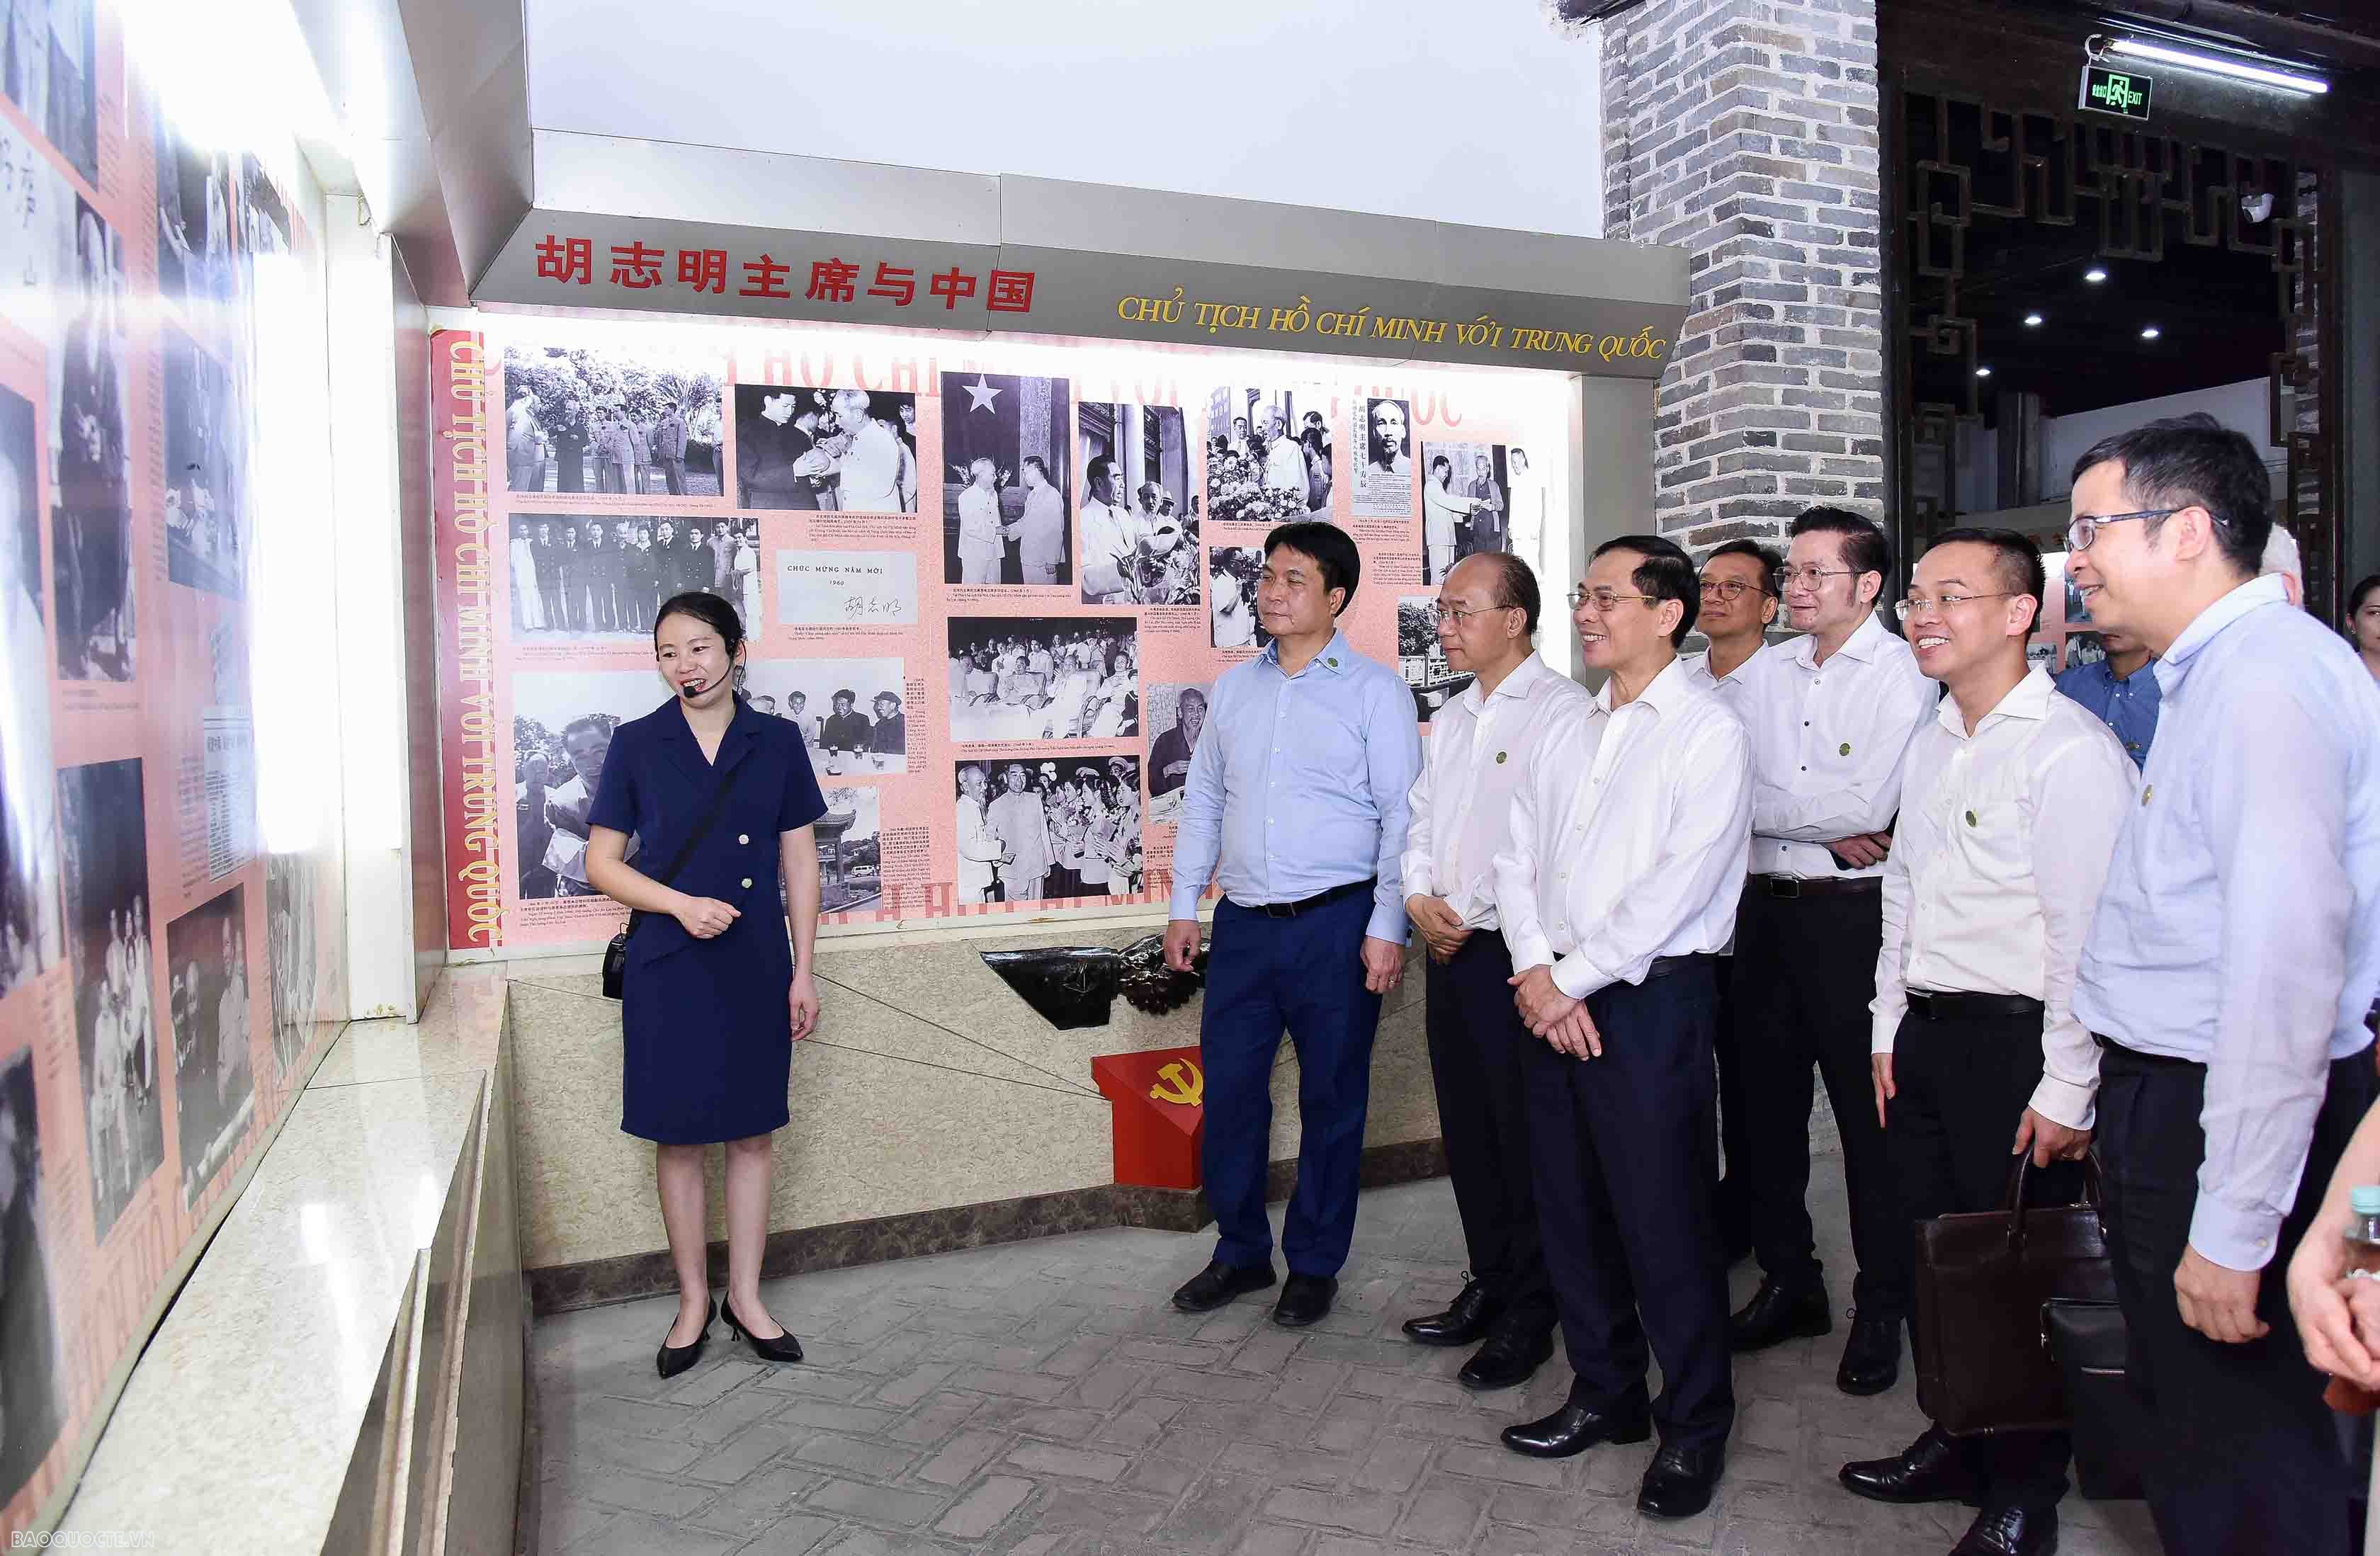 Tại đây, Bộ trưởng đã nghe giới thiệu về con đường hoạt động cách mạng của Chủ tịch Hồ Chí Minh tại Trung Quốc, ý nghĩa của các kỷ vật của Bác Hồ cùng các cán bộ cách mạng Việt Nam sang Trung Quốc tìm đường cứu nước còn được lưu giữa tại Nhà lưu niệm cho đến nay.